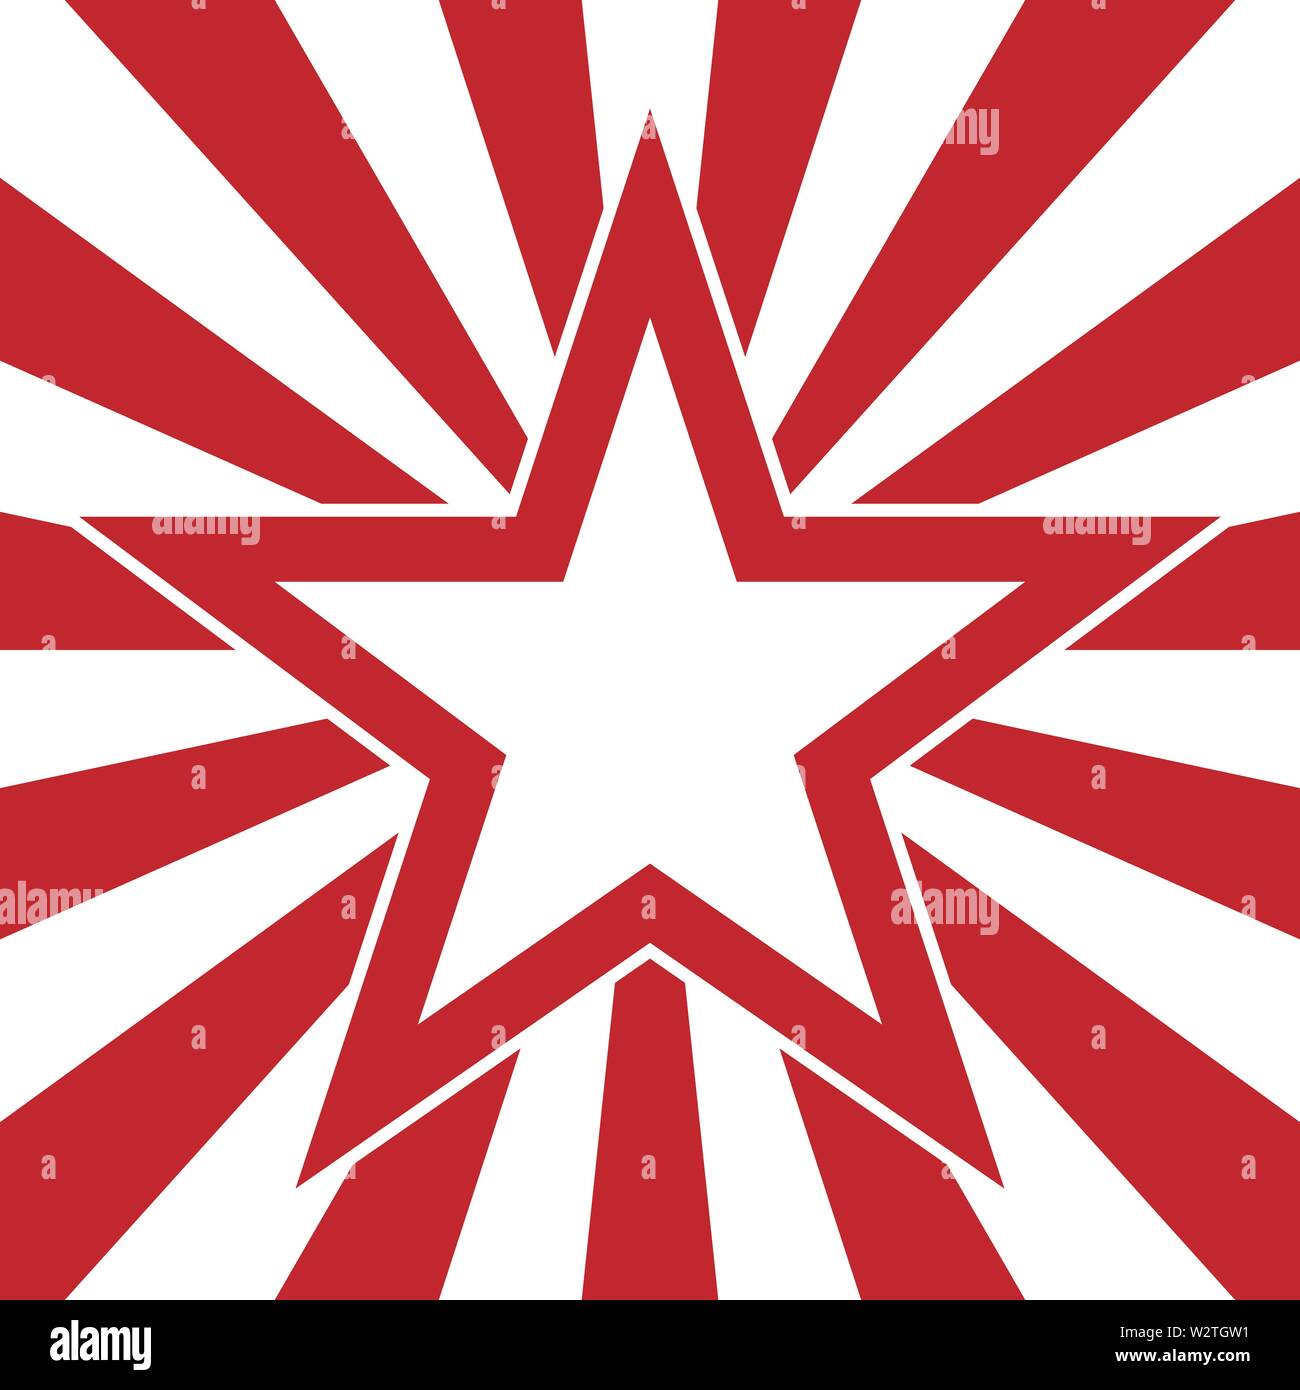 Immagine con stella rossa con vettore di raggi radiali Illustrazione Vettoriale